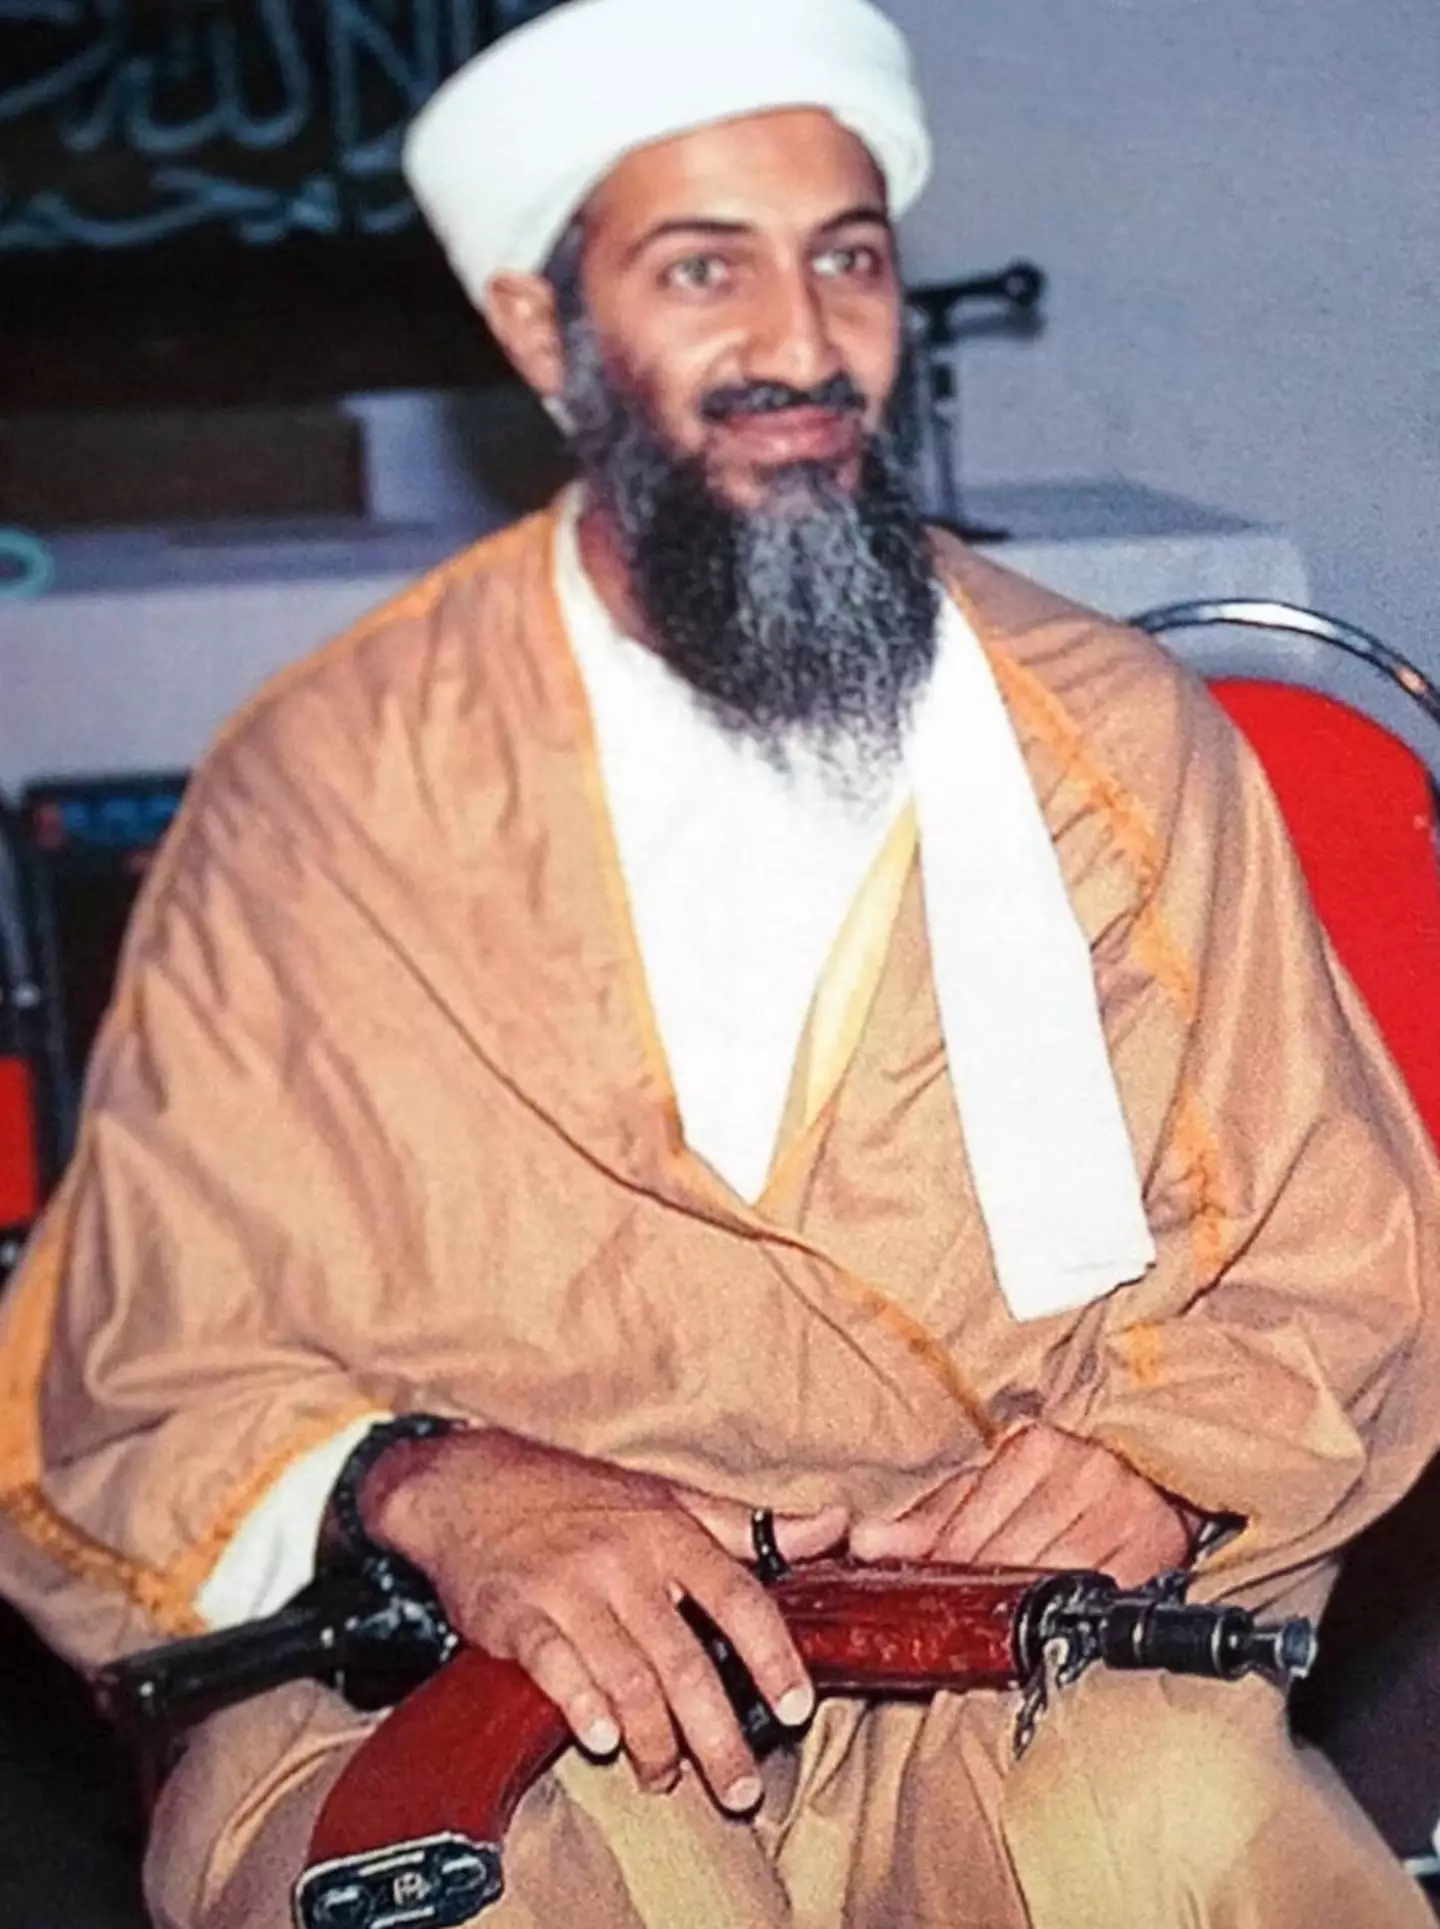 Osama Bin Laden founded Al-Qaeda.